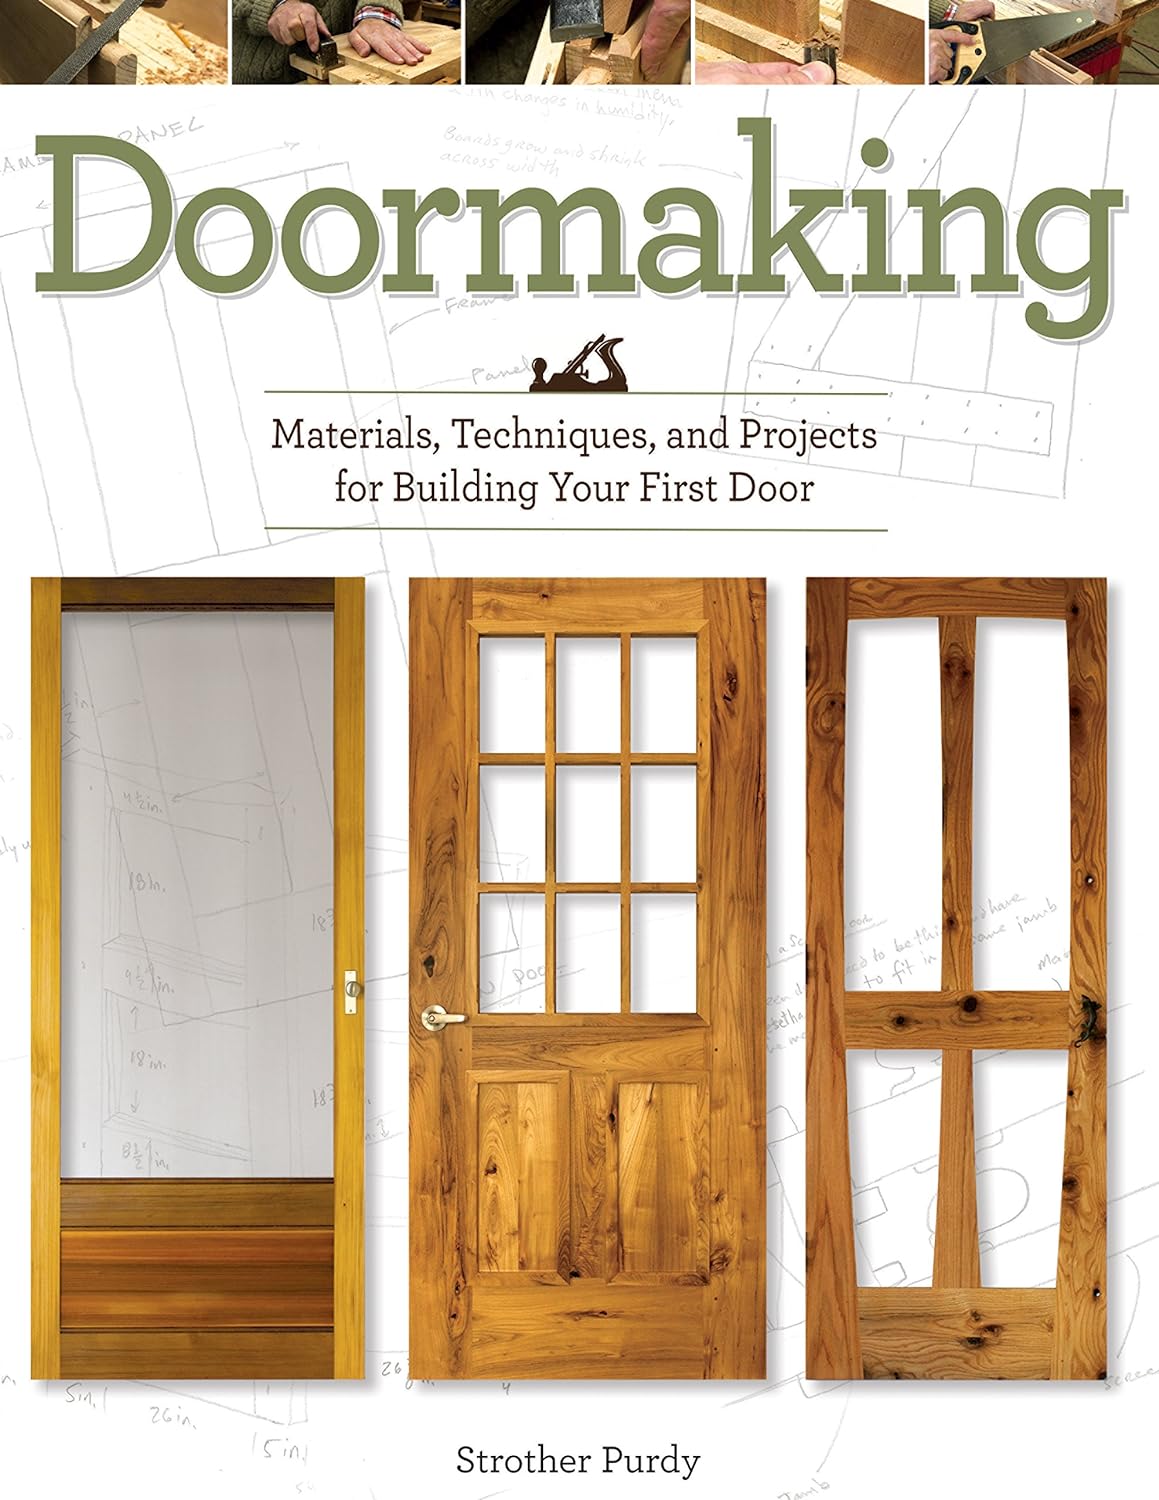 Doormaking